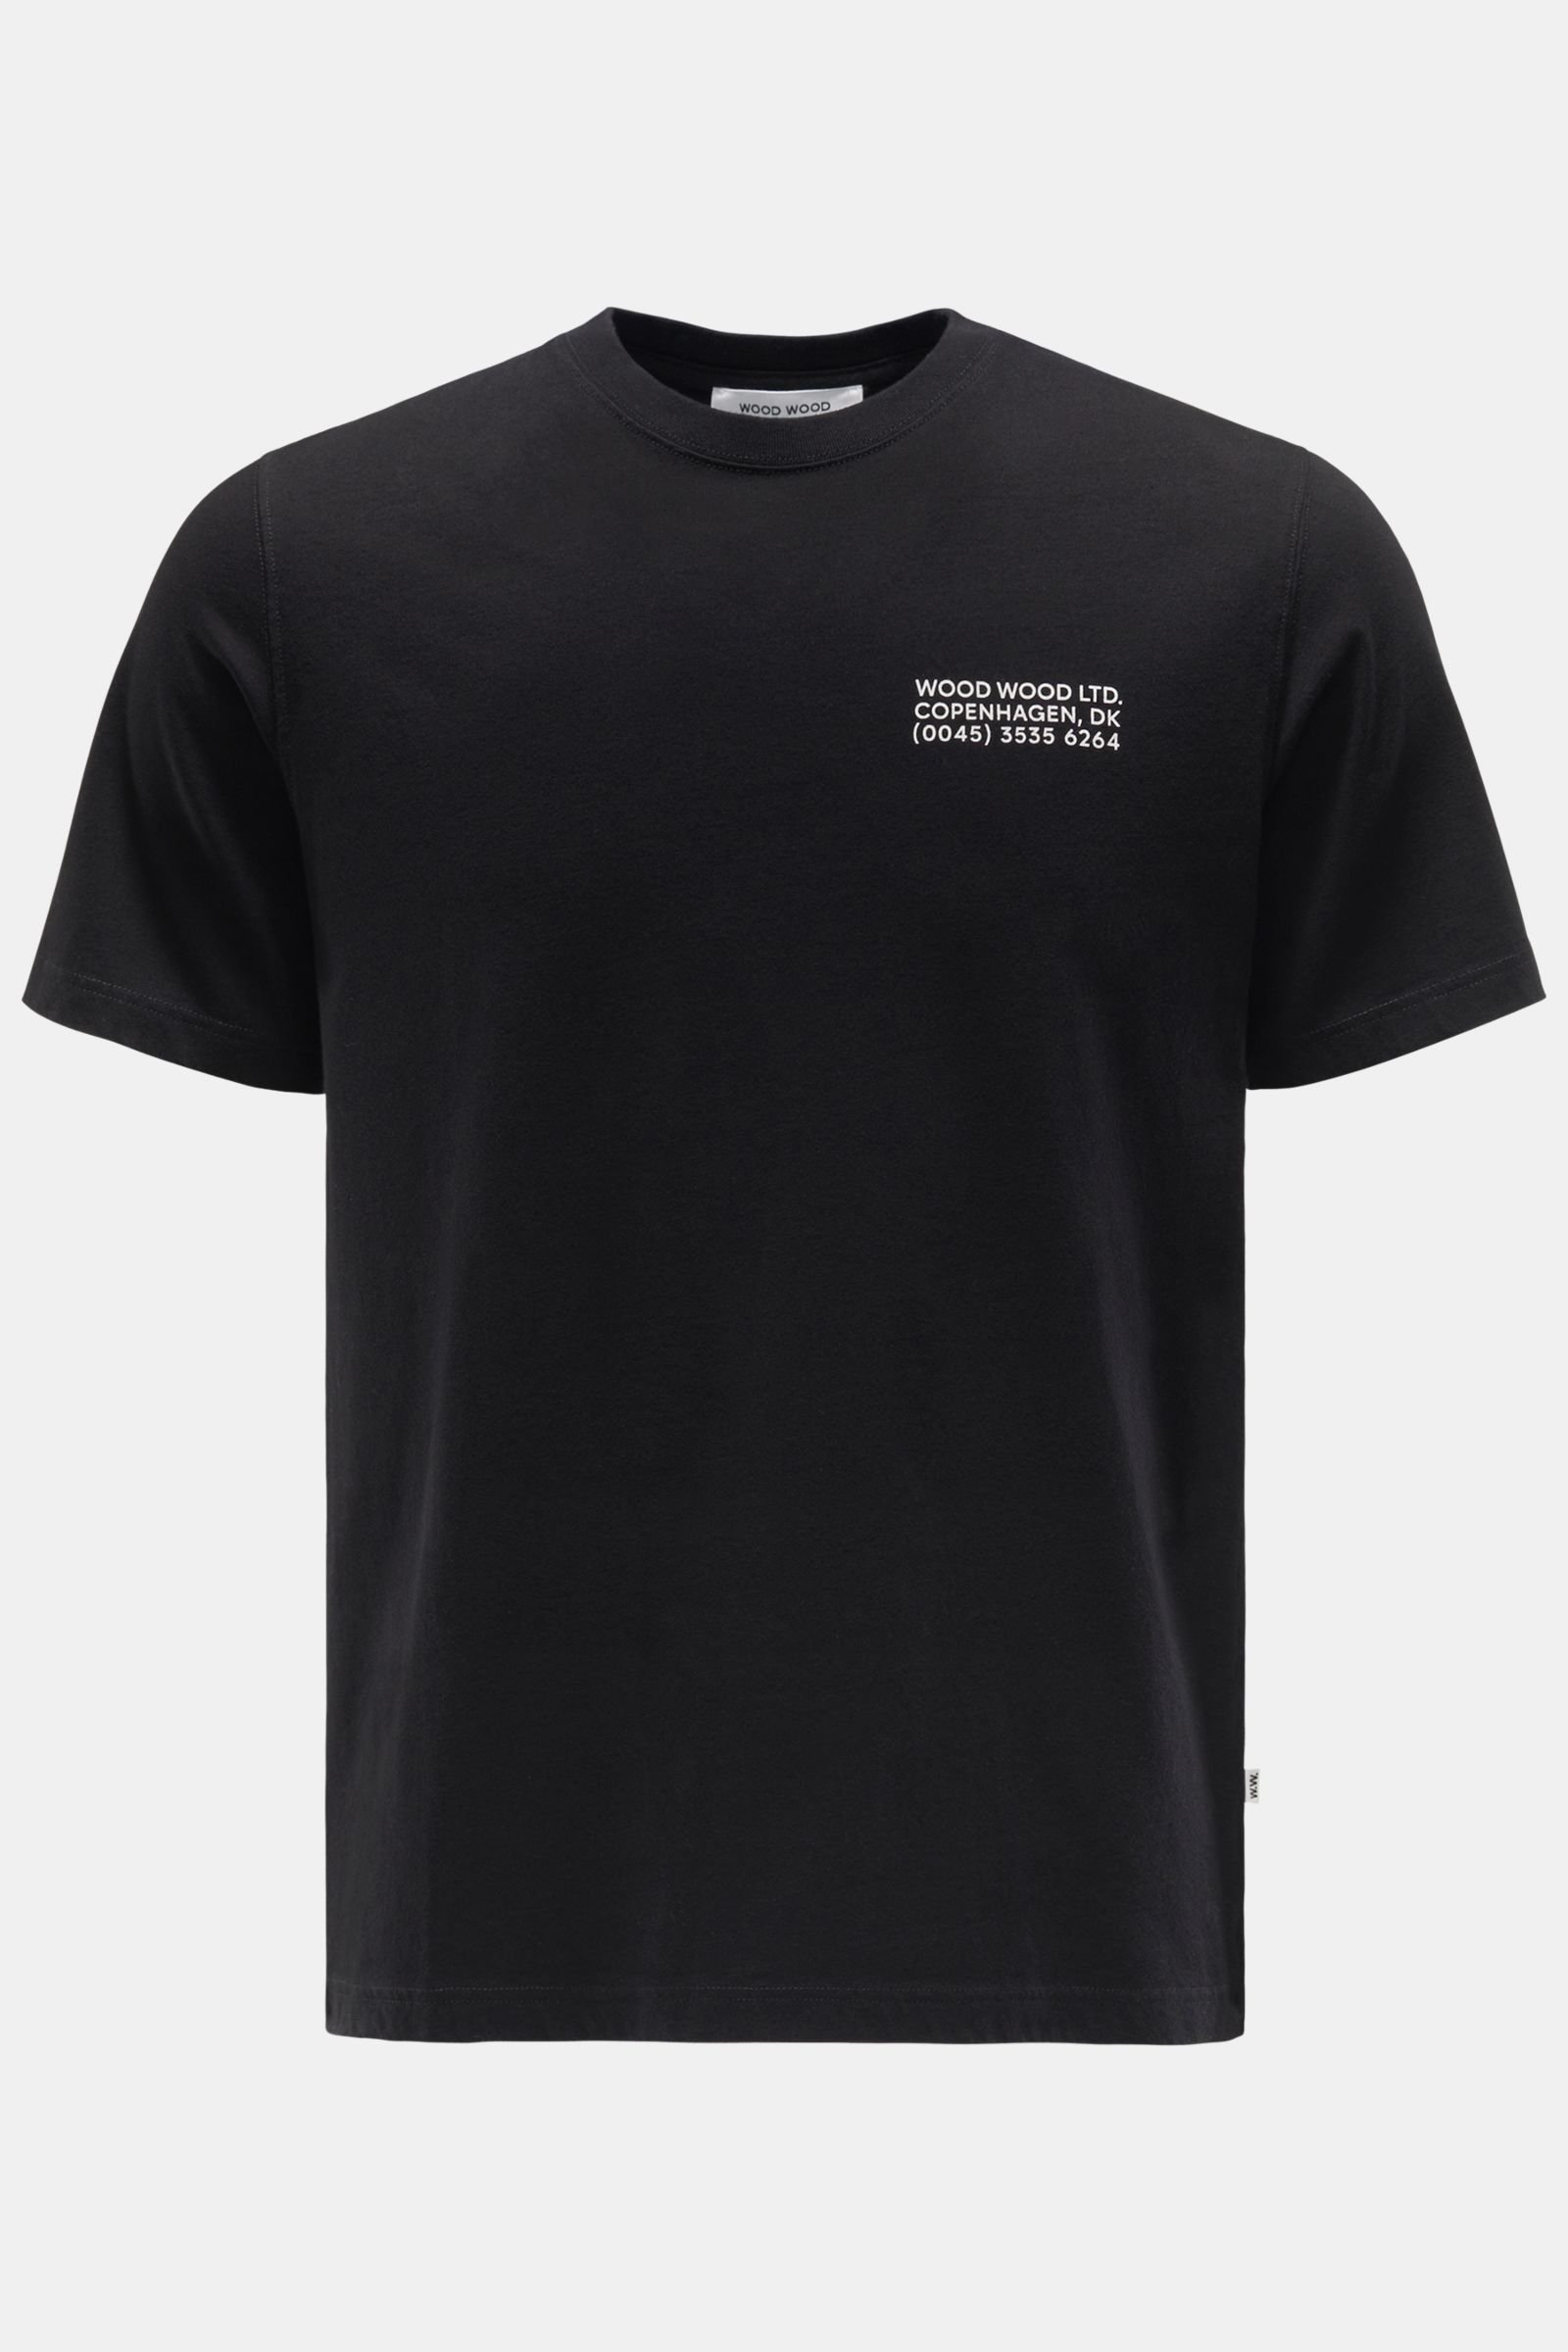 Rundhals-T-Shirt 'Sami Info' schwarz